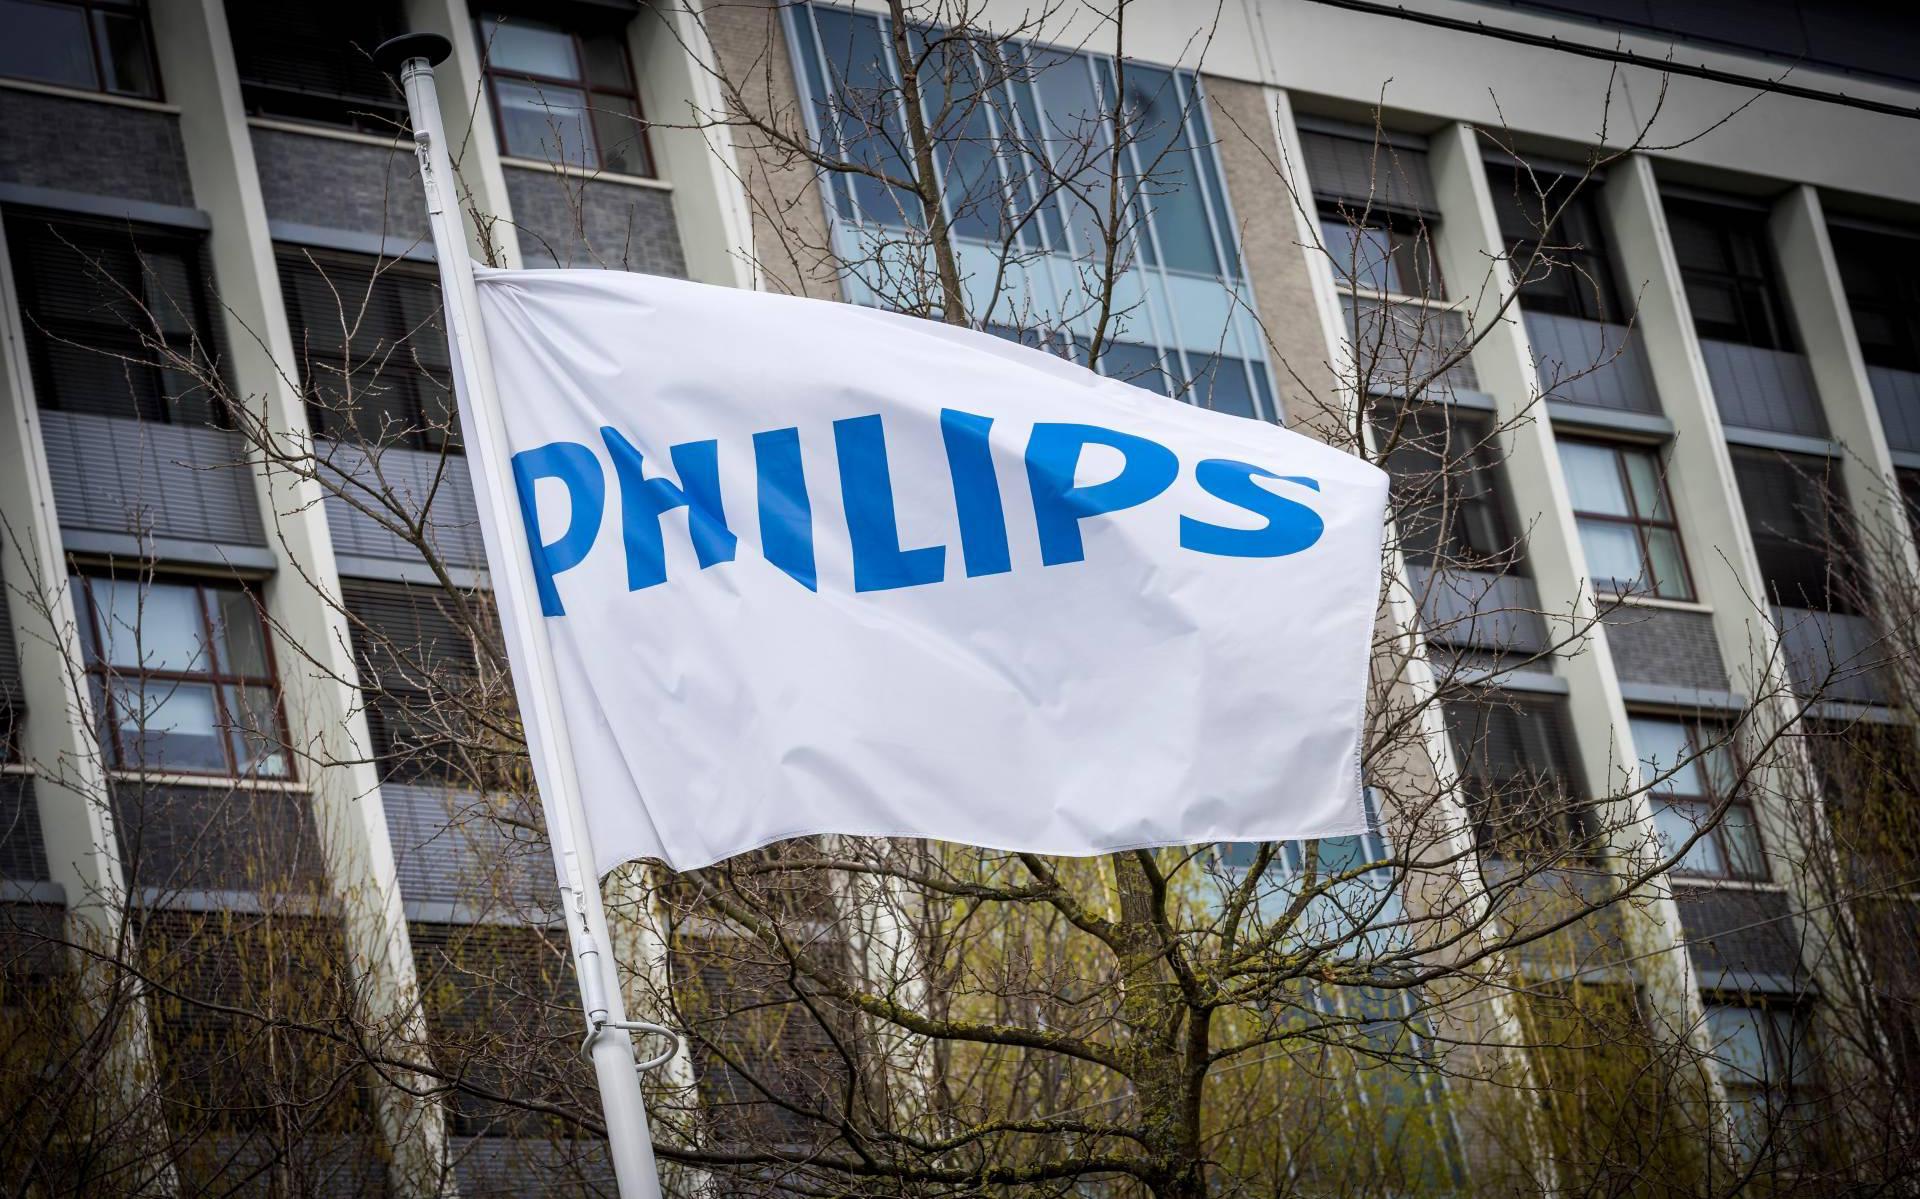 Door VS geweigerde apparatuur Philips gaat mogelijk naar Afrika